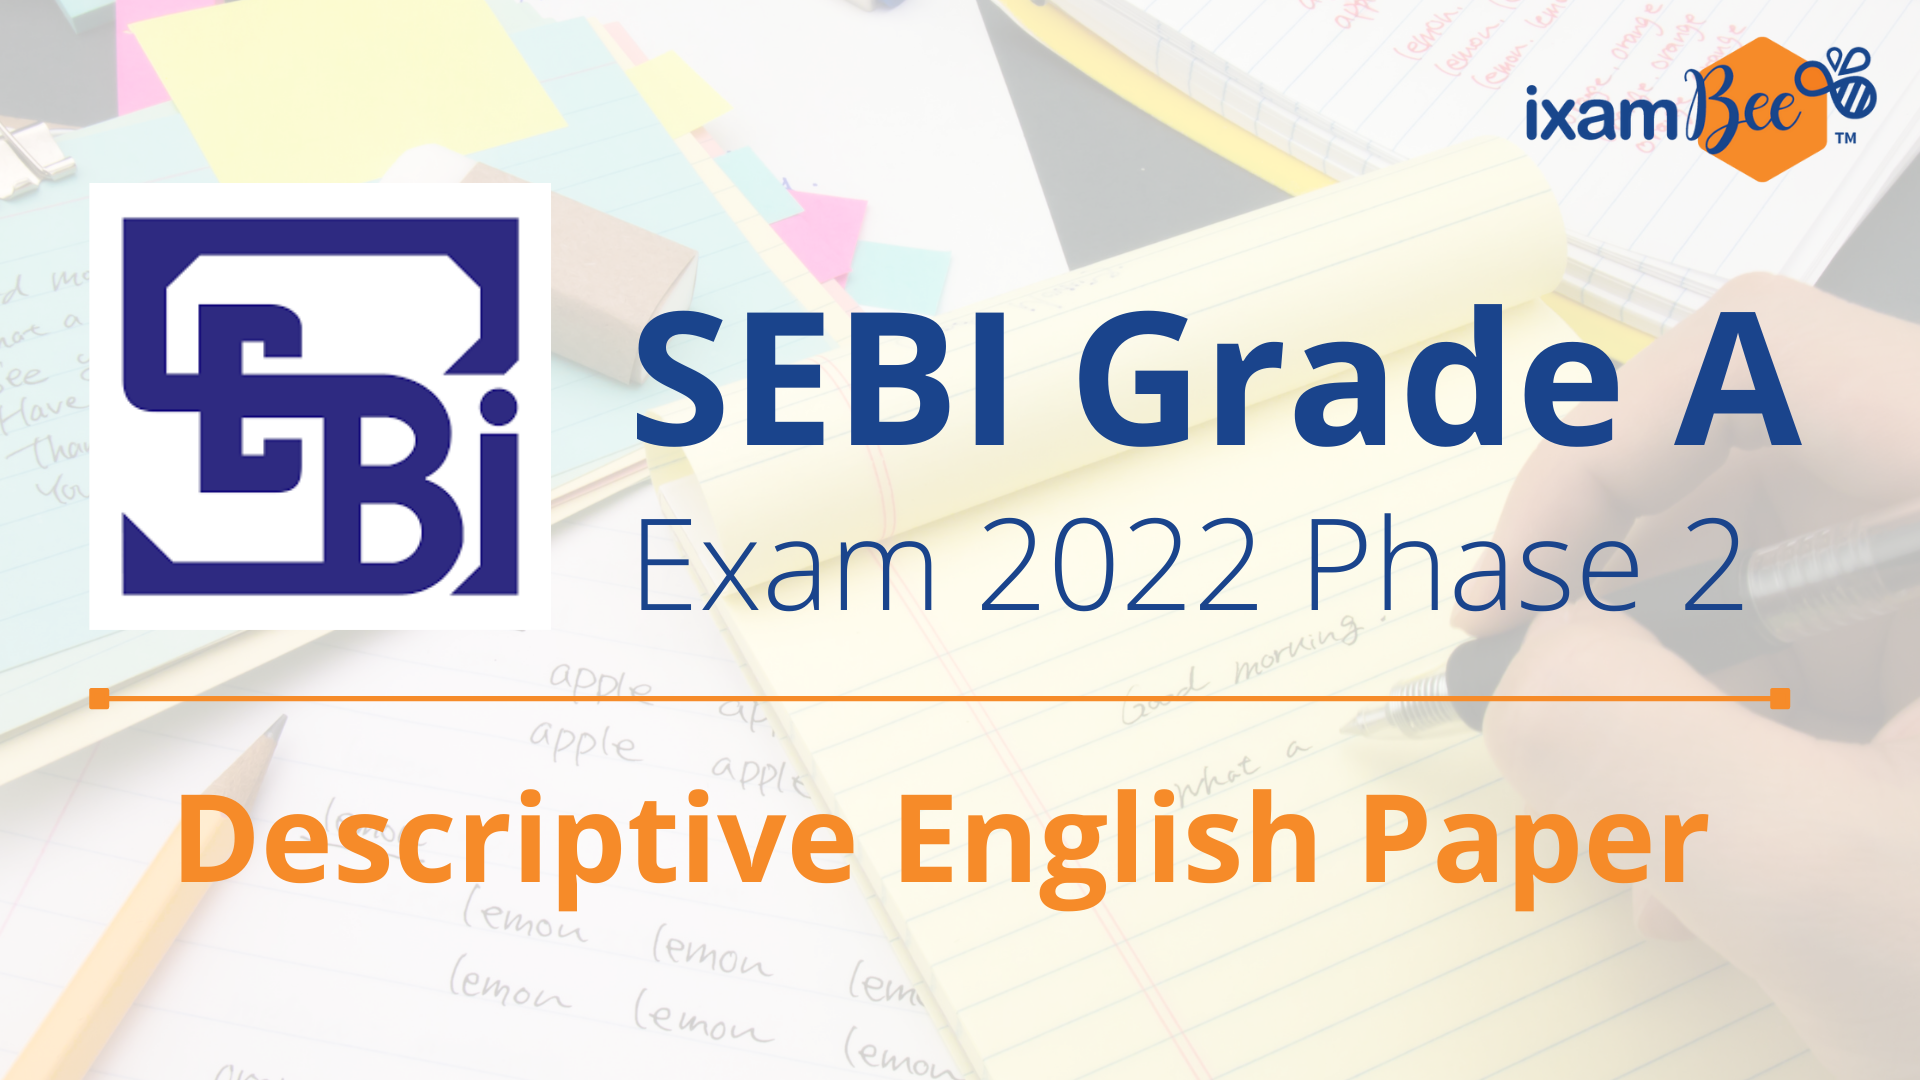 SEBI Grade A 2022 Descriptive English